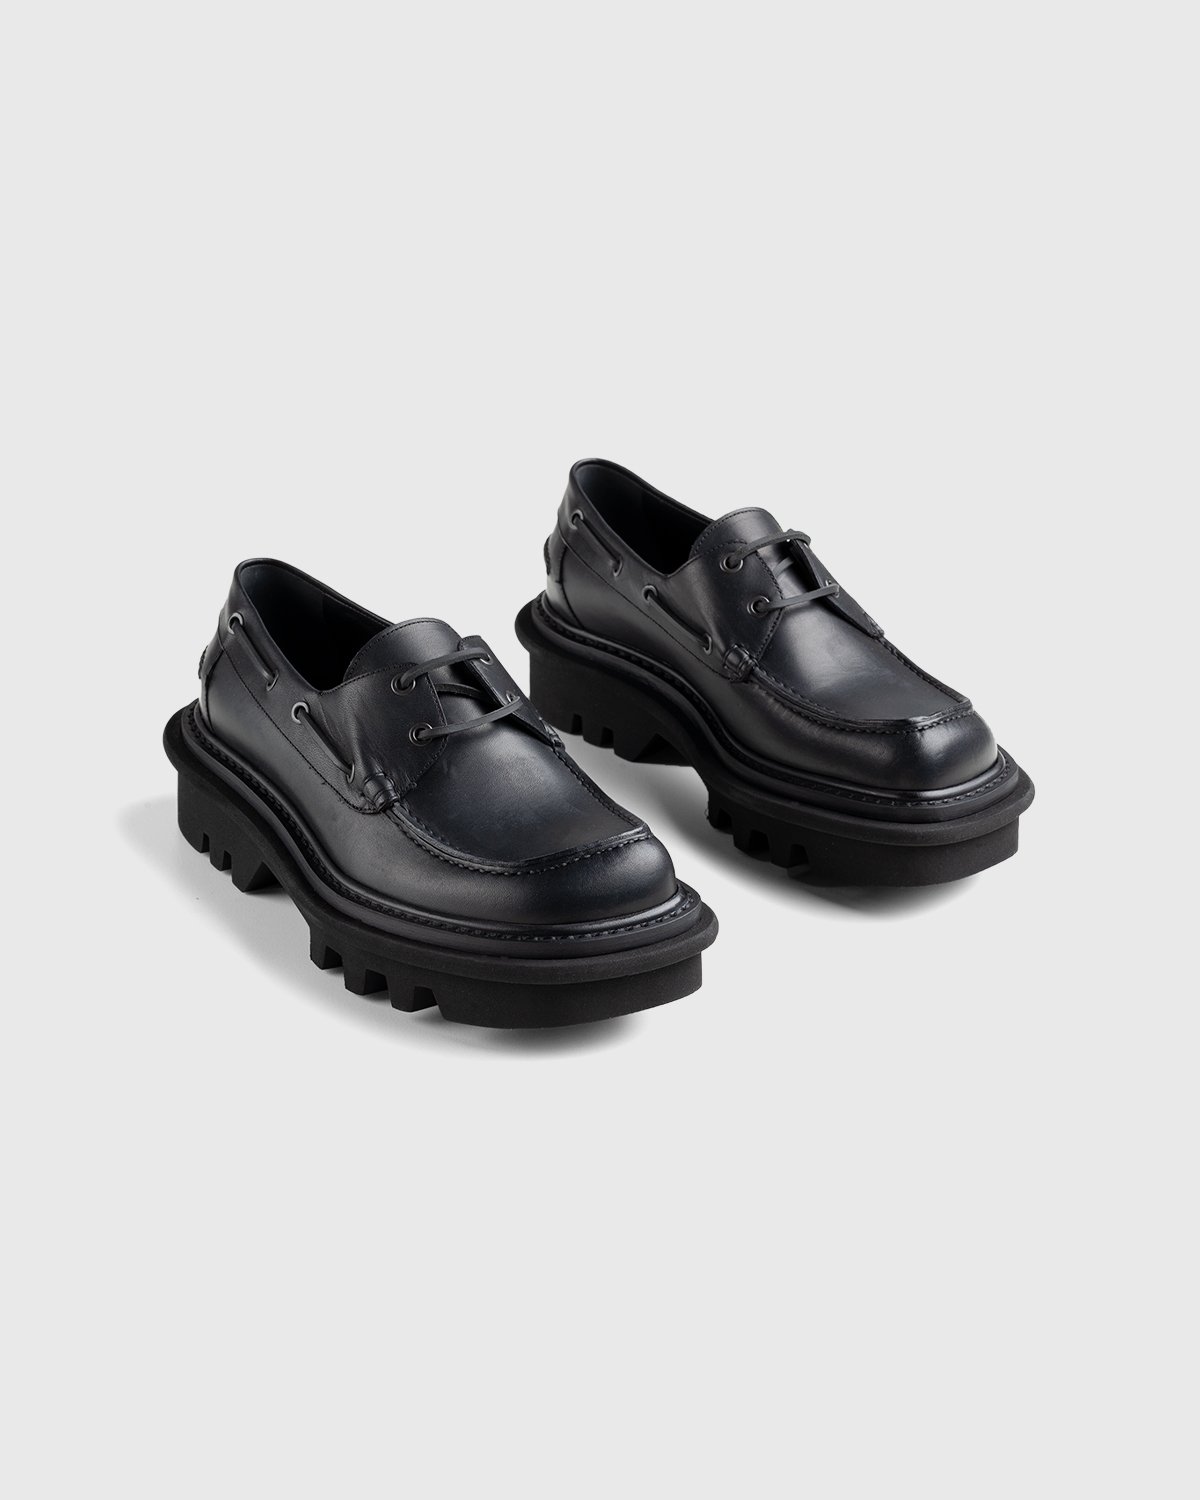 Dries van Noten - Leather Boat Shoe Black - Footwear - Black - Image 3